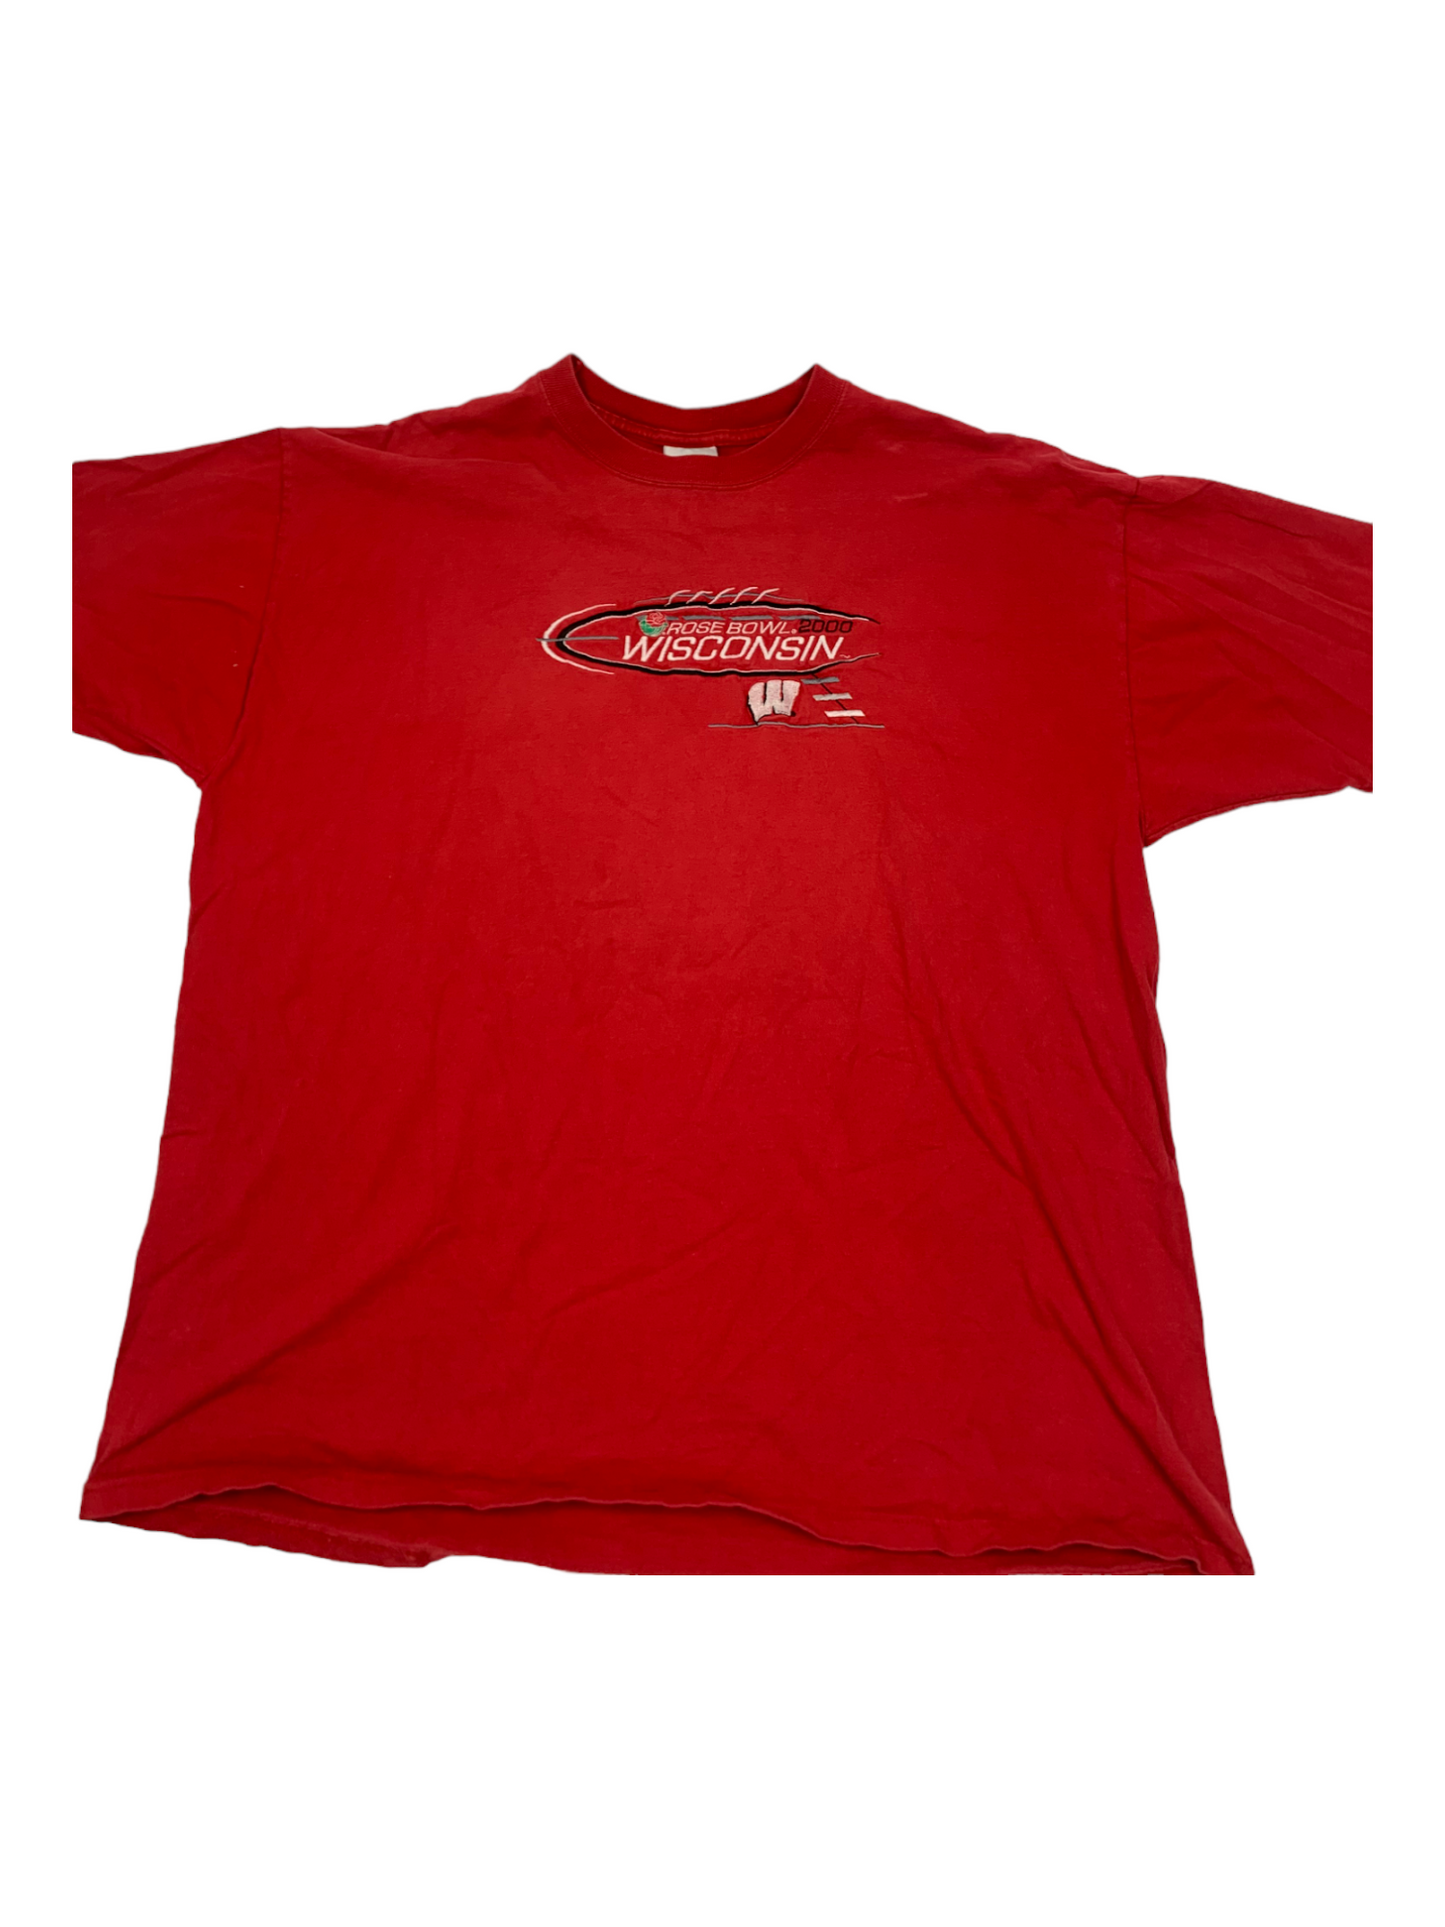 Rose Bowl Red T-Shirt 2000